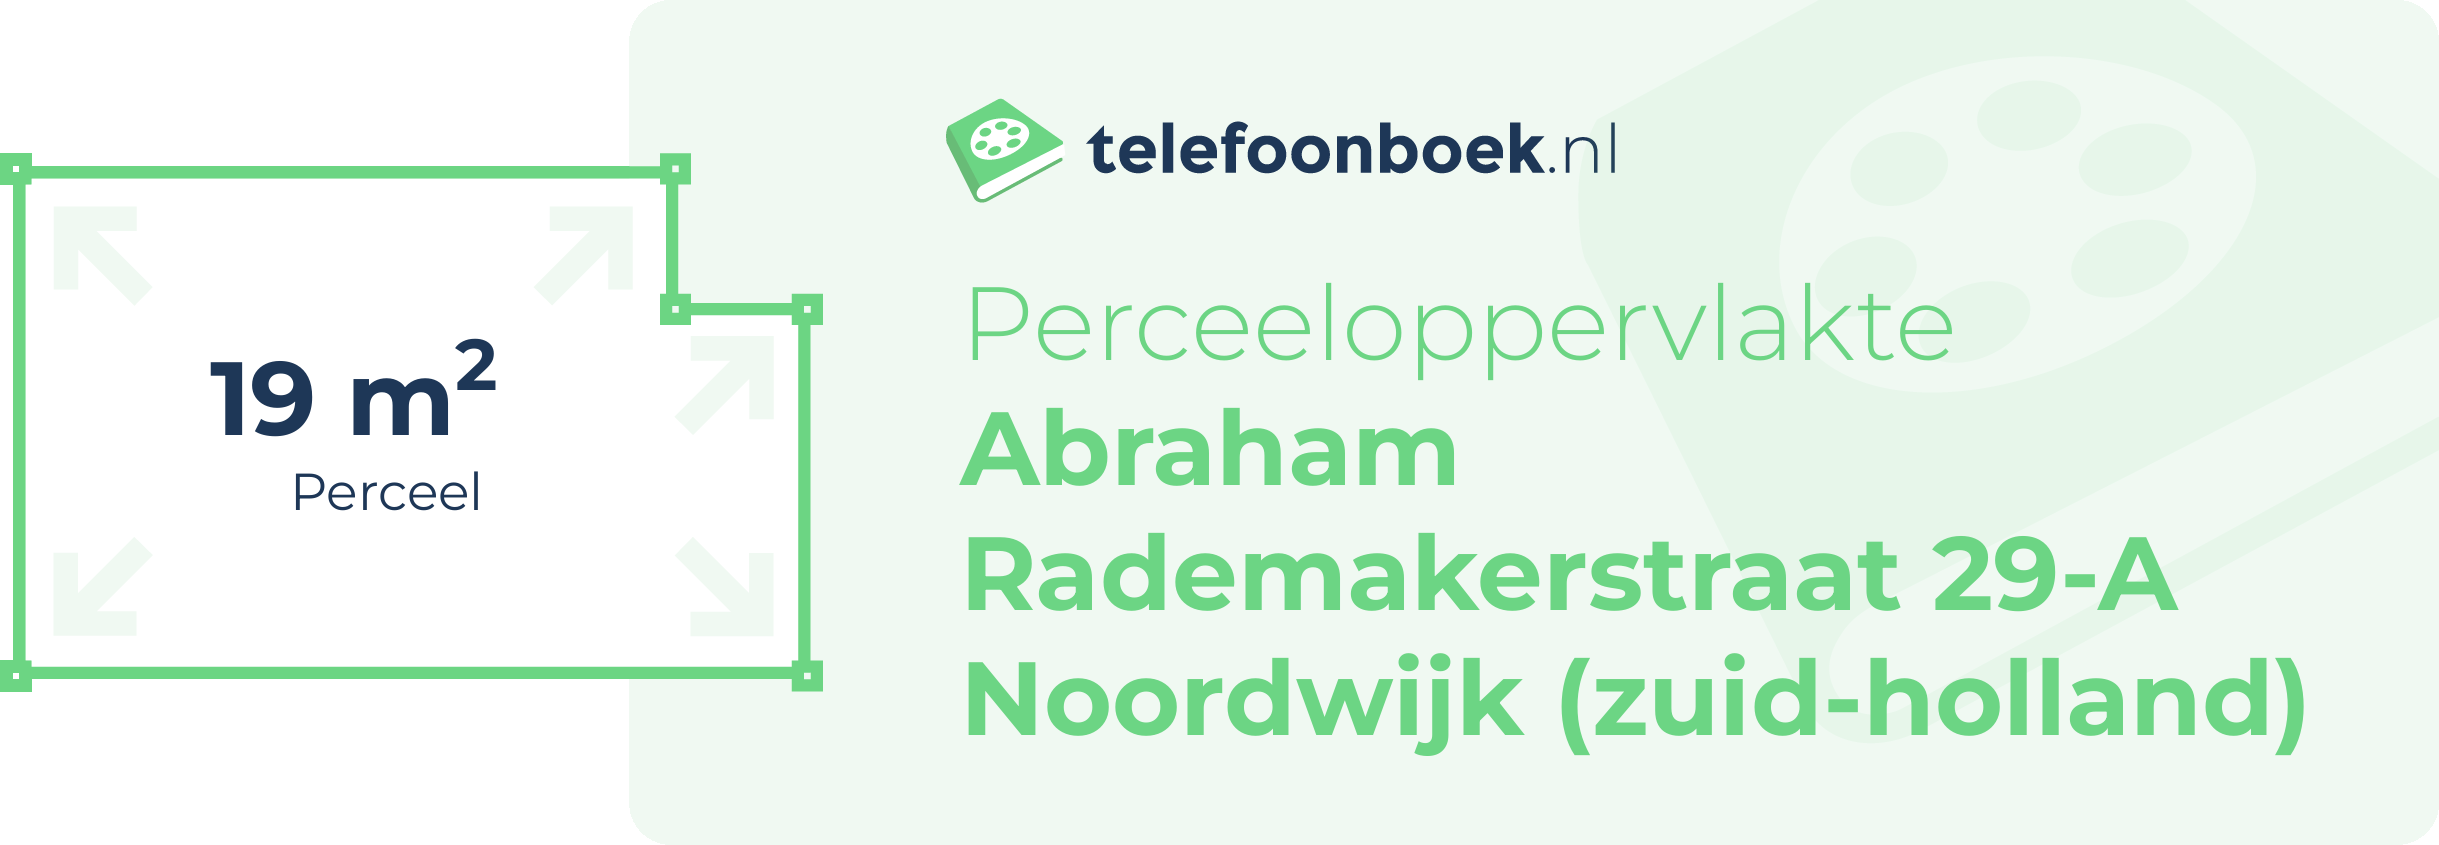 Perceeloppervlakte Abraham Rademakerstraat 29-A Noordwijk (Zuid-Holland)